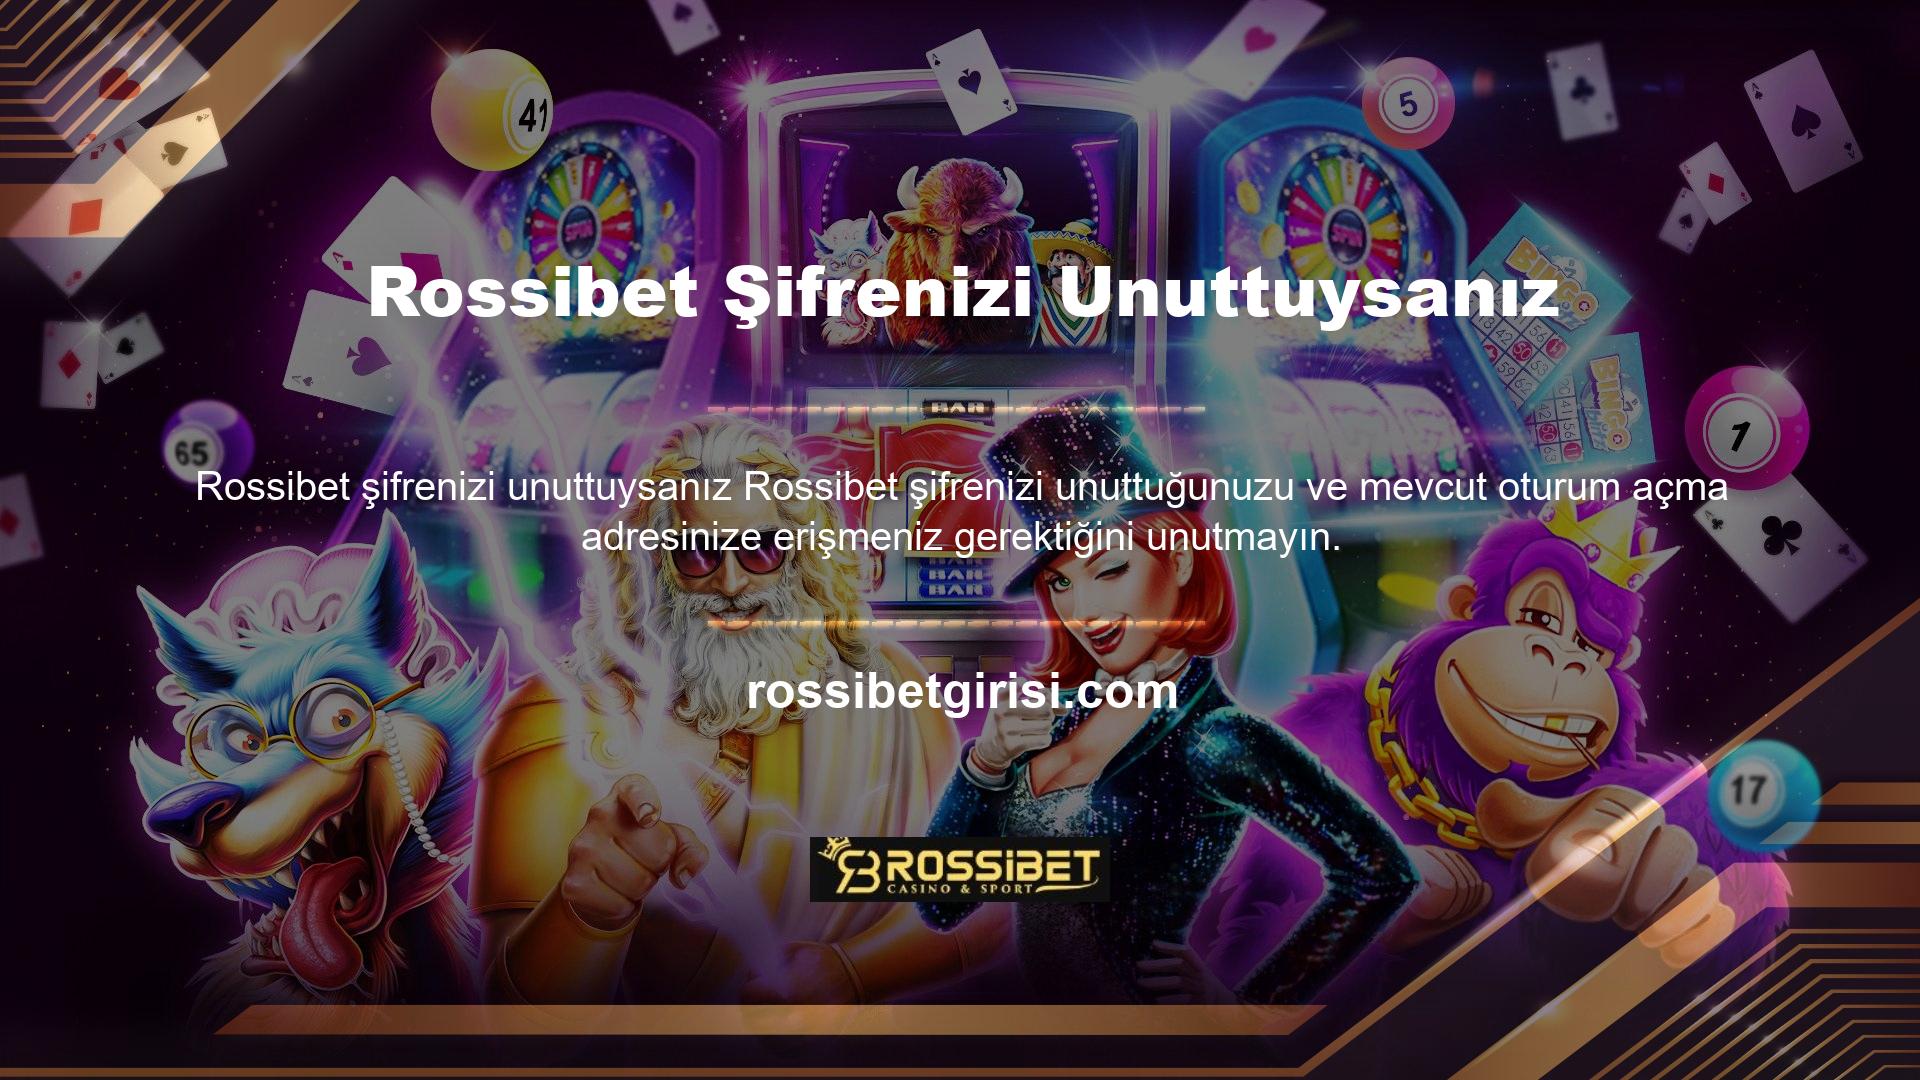 Aslında Rossibet, bağlantı adresini düzenli olarak günceller